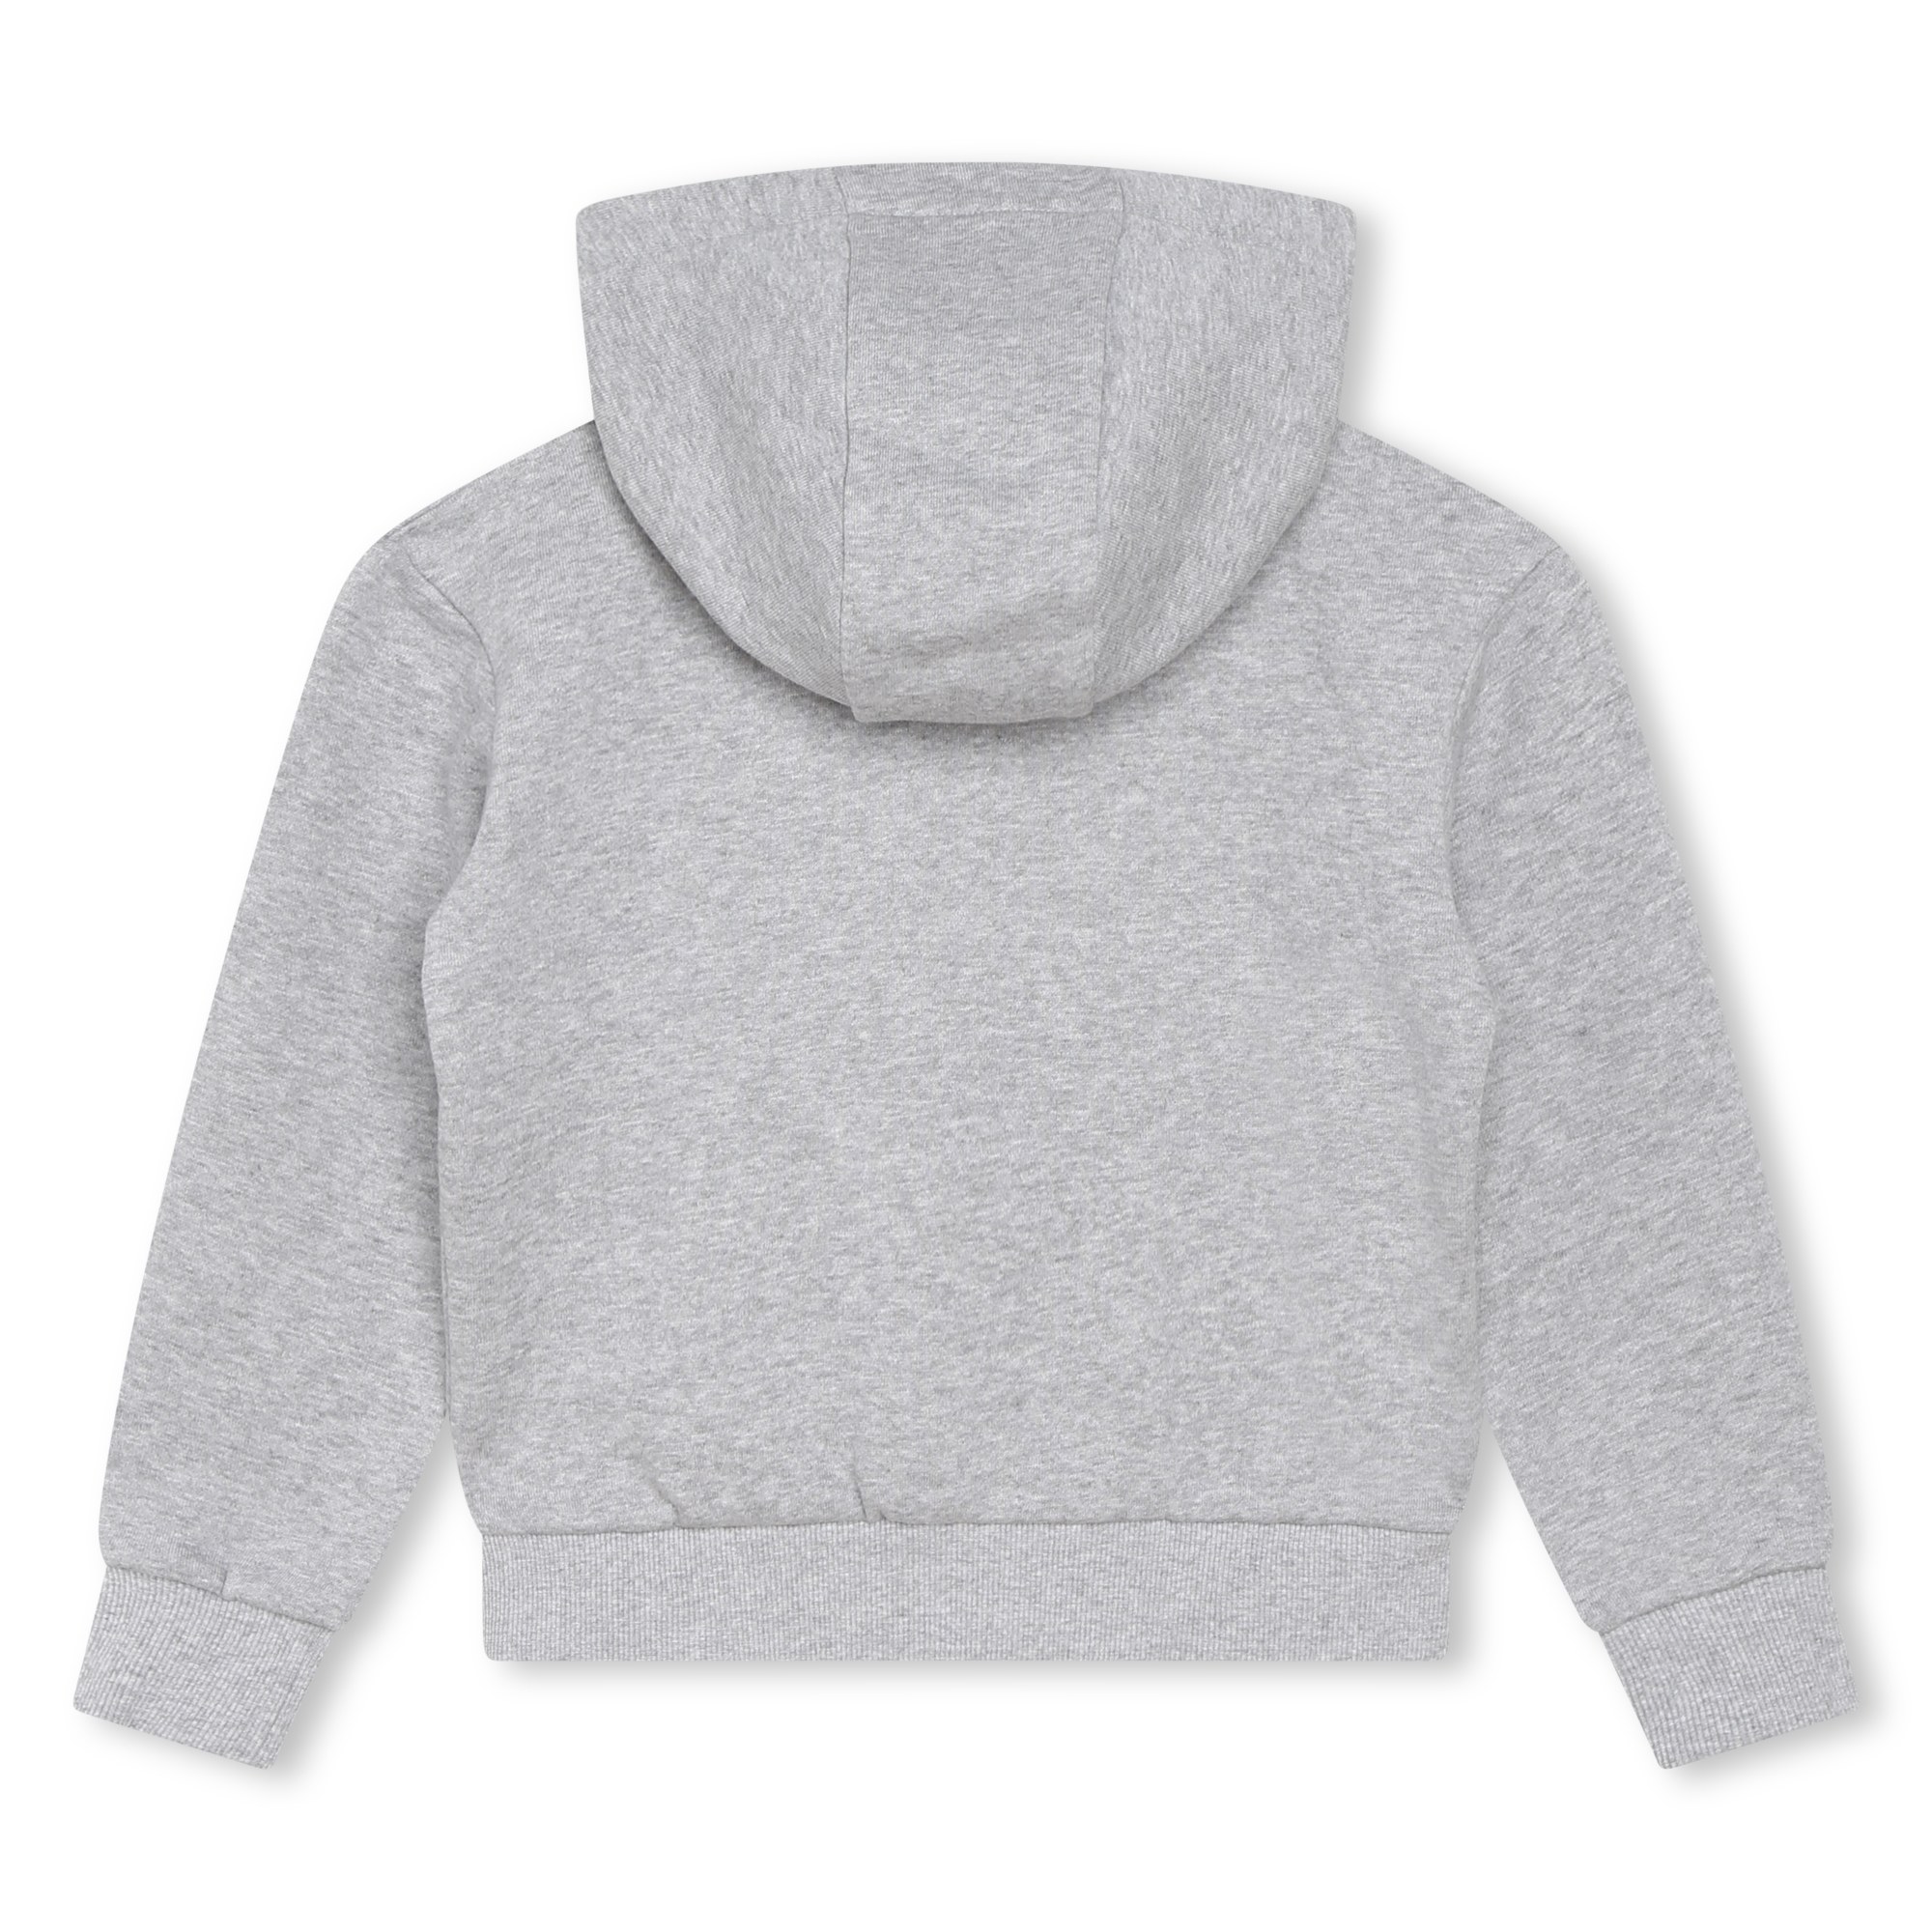 Embroidered hooded sweatshirt KENZO KIDS for GIRL